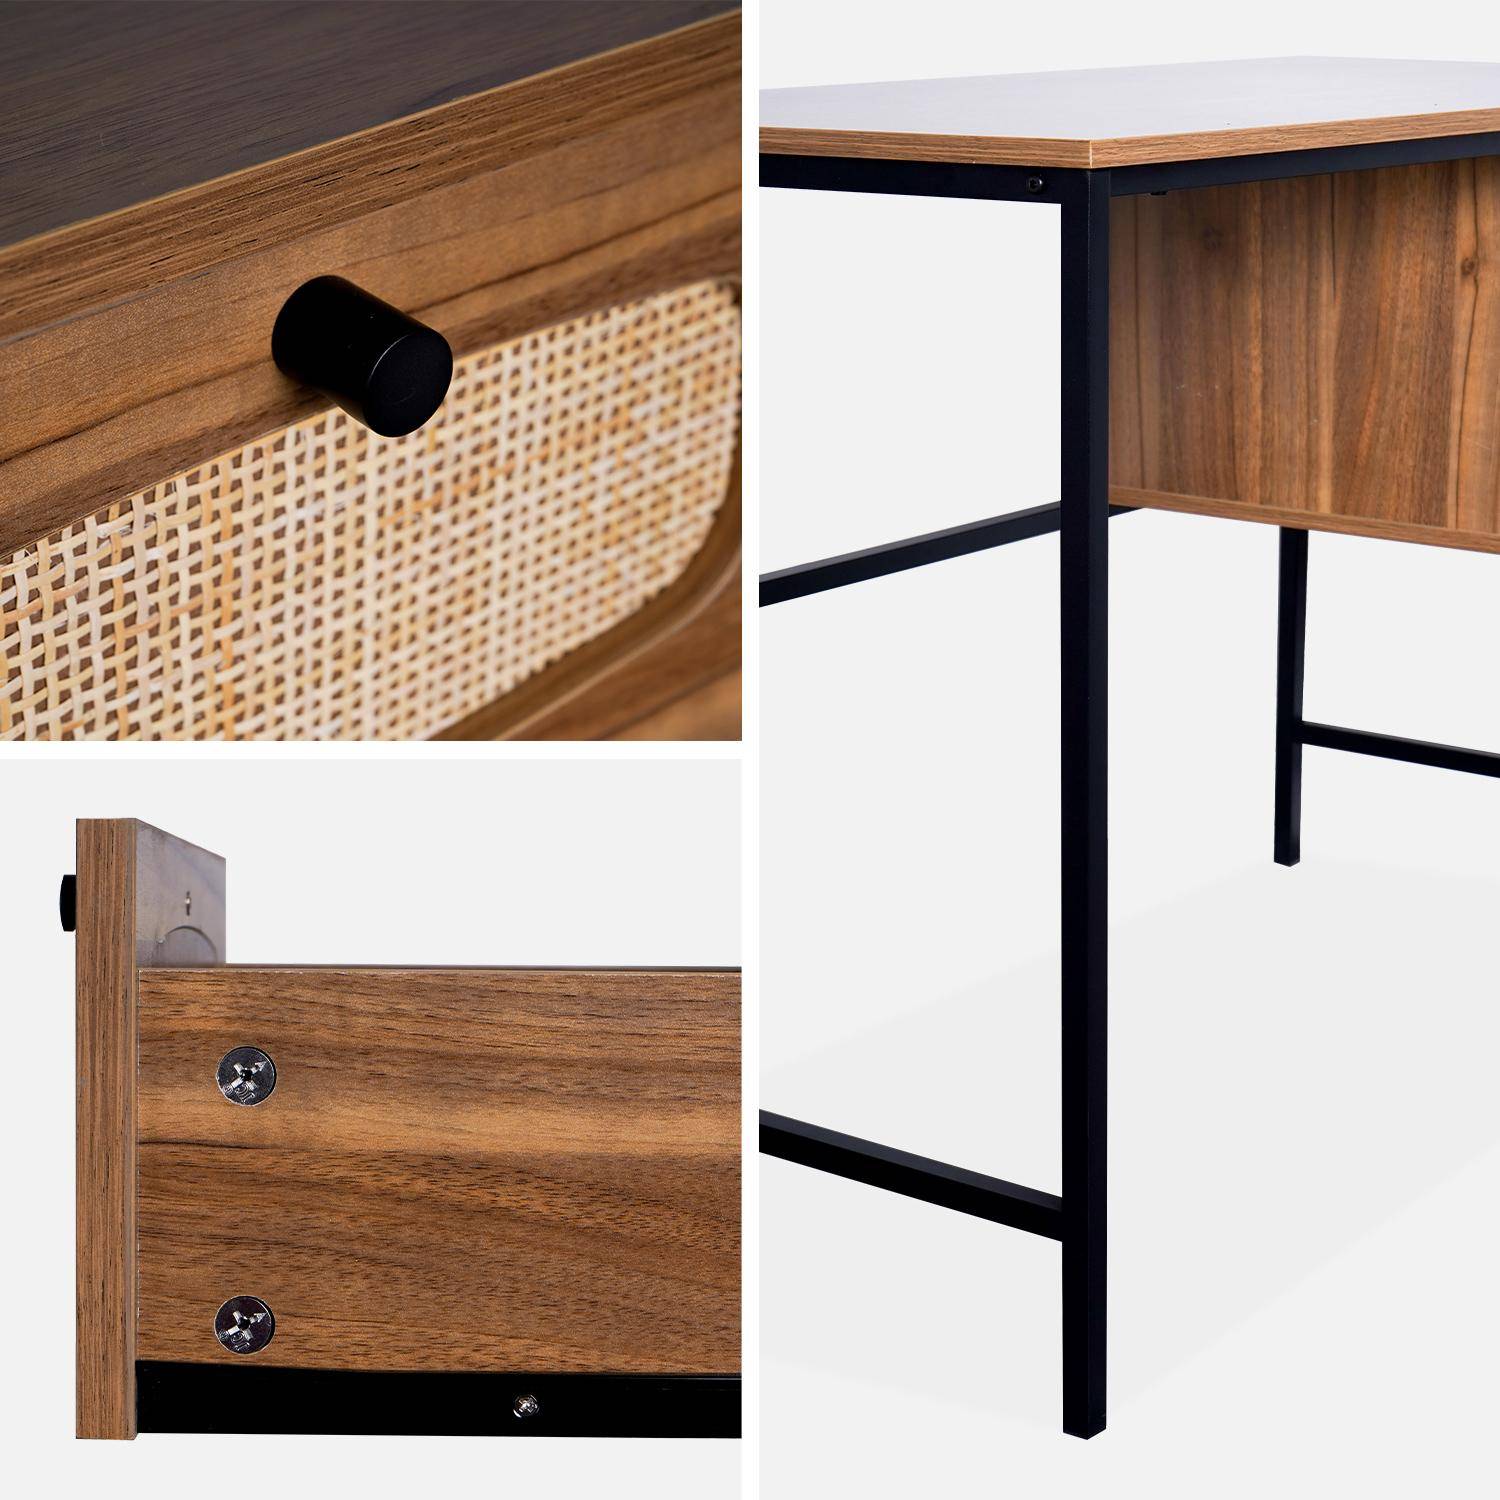 Retro-Schreibtisch mit Holzdekor und Rohrgeflecht, Gestell und Griffen aus schwarzem Metall - Retro,sweeek,Photo7